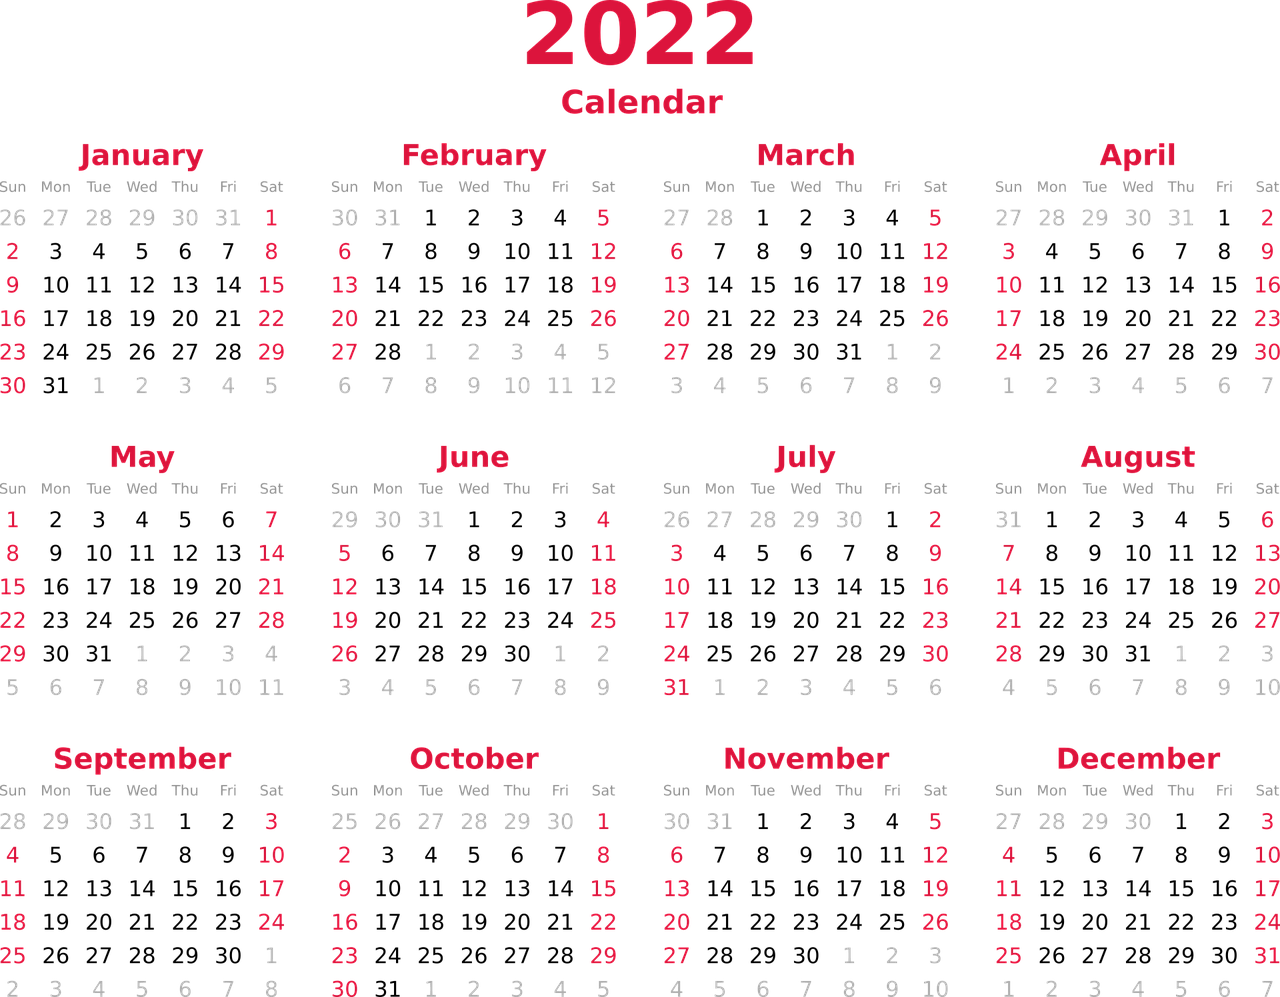 Ilustrasi - Penjelasan 26 Mei 2022 hari apa beserta daftar hari libur nasional selama bulan Mei 2022.